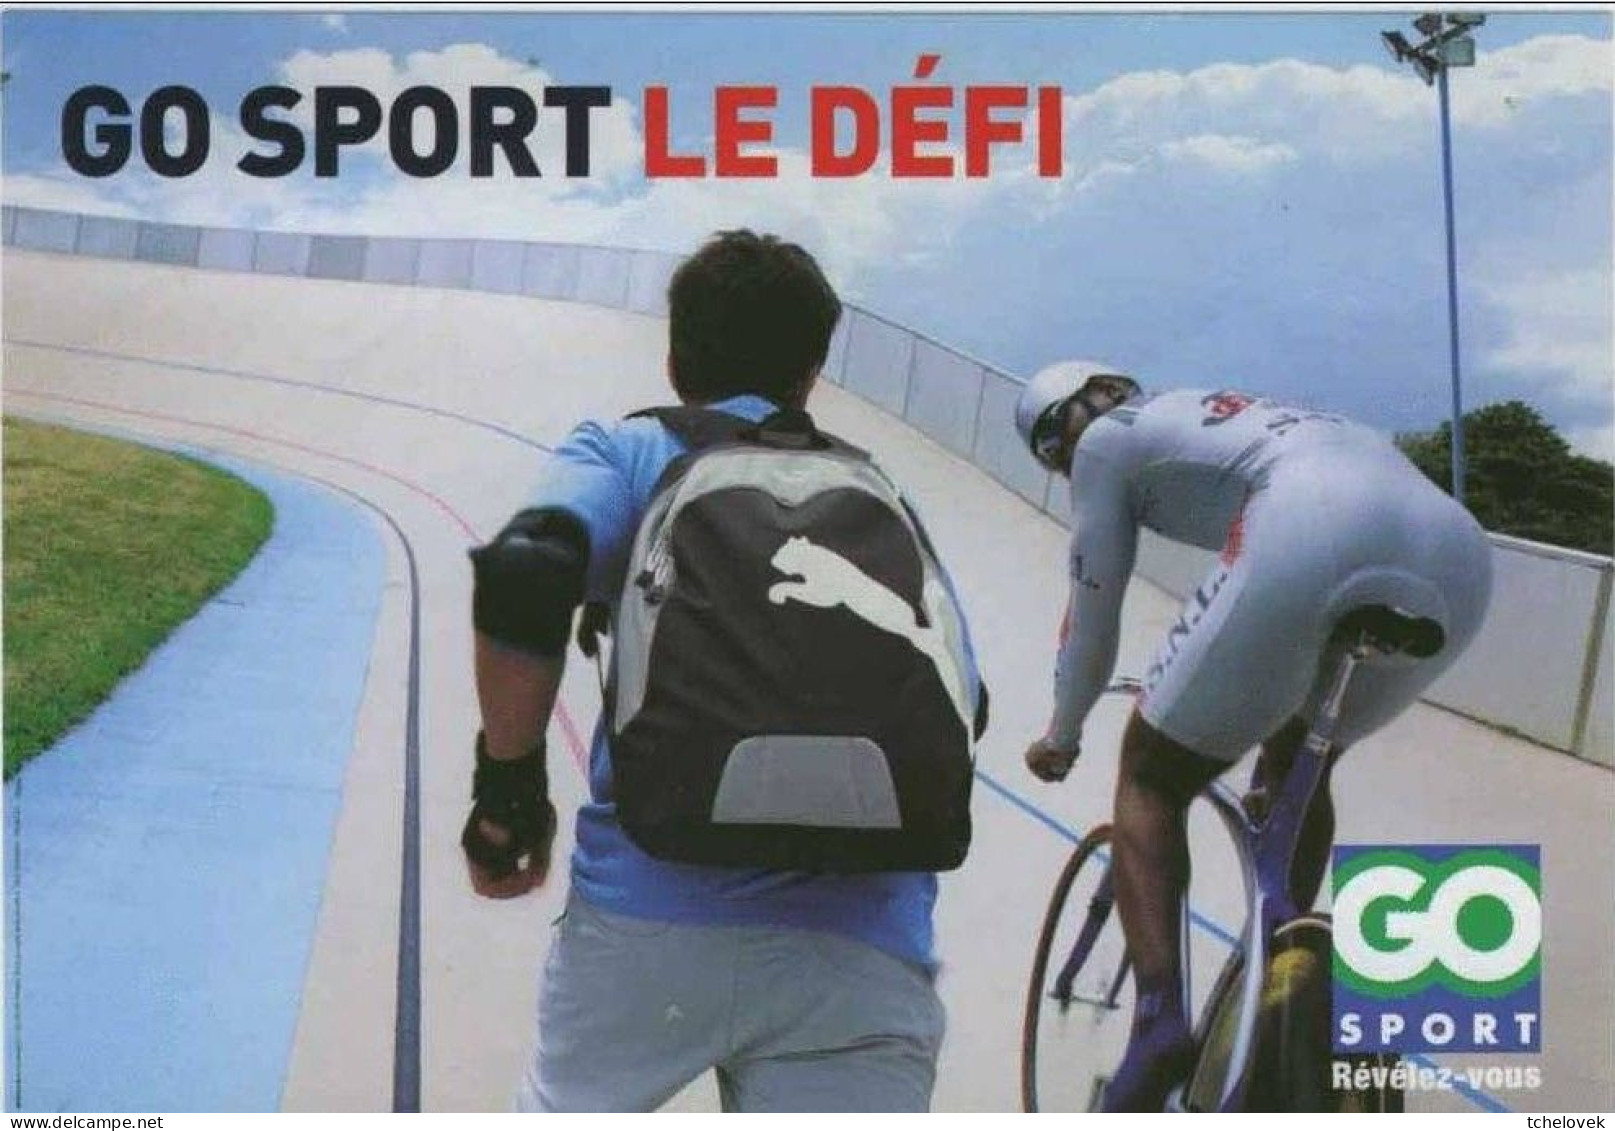 Thèmes. Sports. Cyclisme. VTT Jura & Anjou Velo Vintage & 2018 & Go Sport - Cyclisme